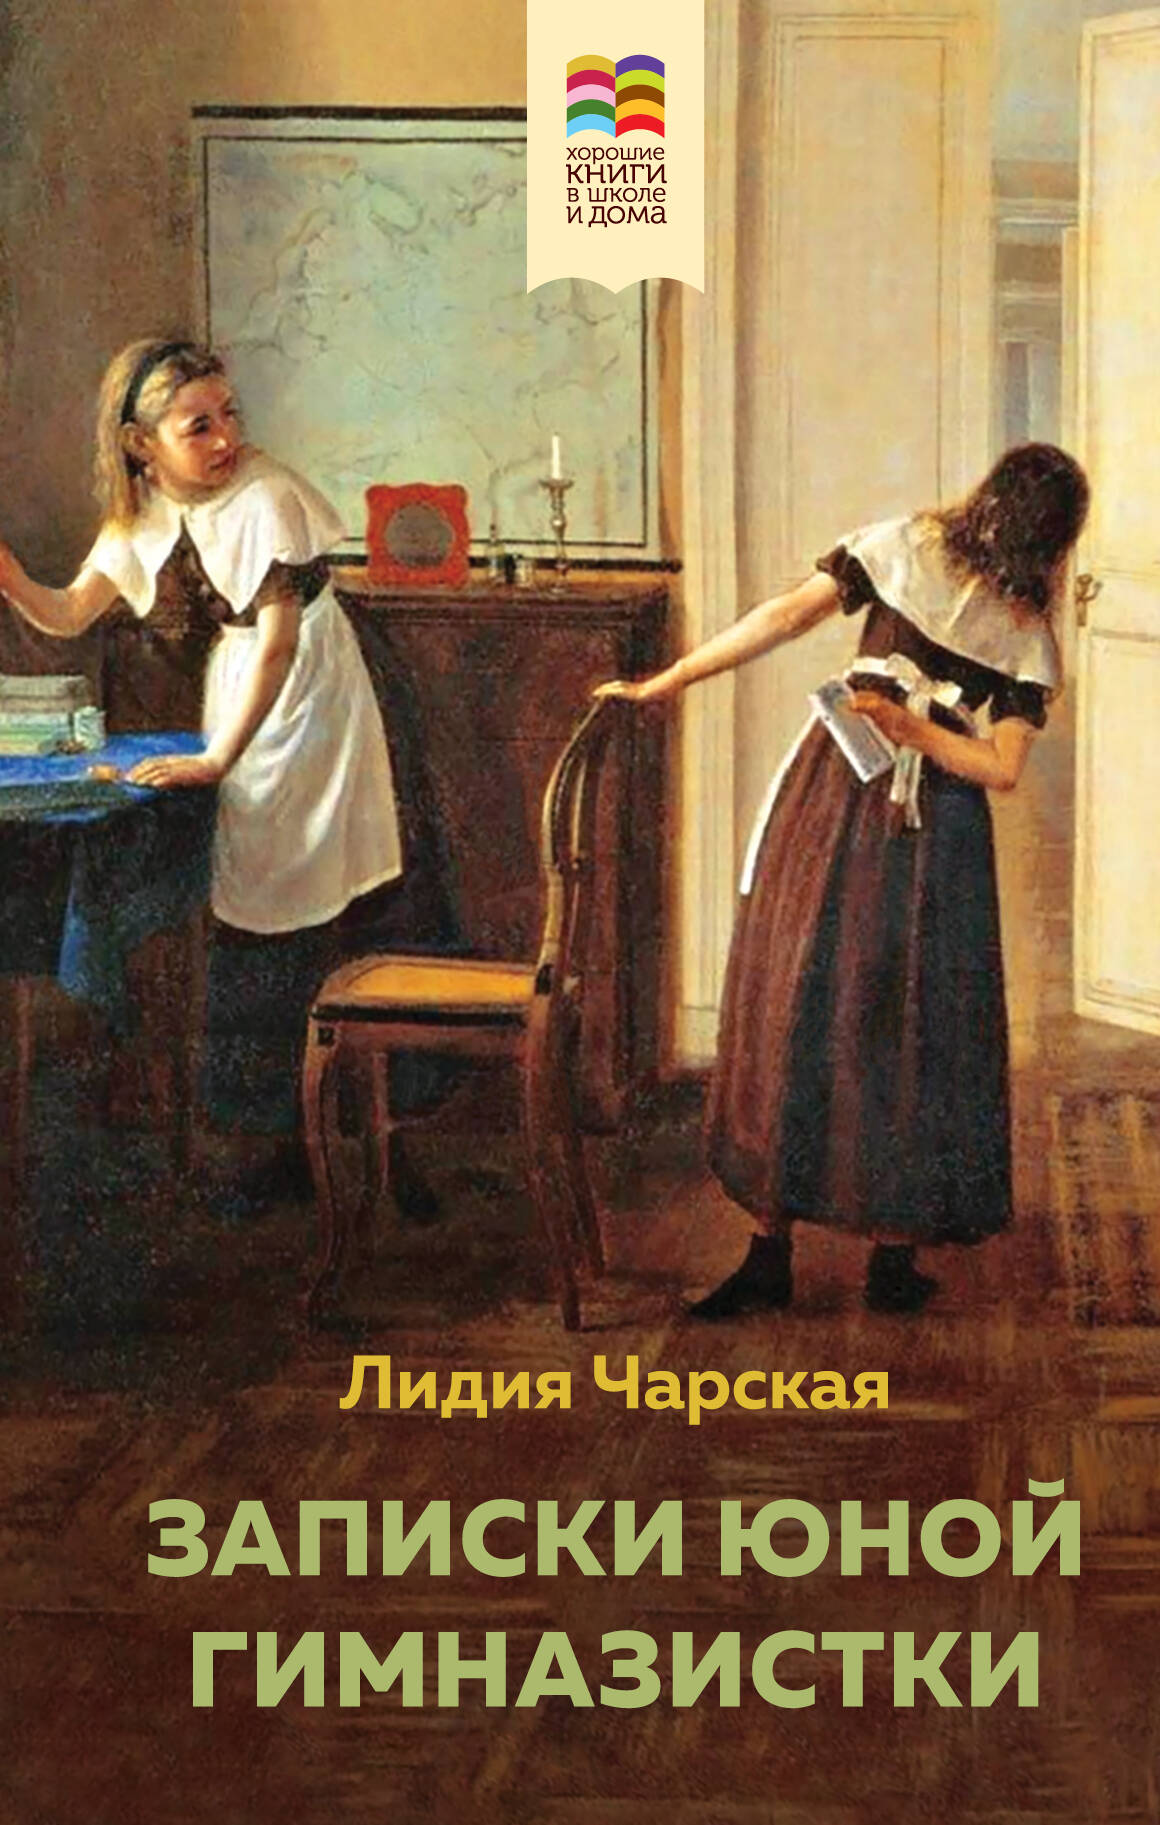 Комплект из 2 книг: Поллианна и Записки юной гимназистки